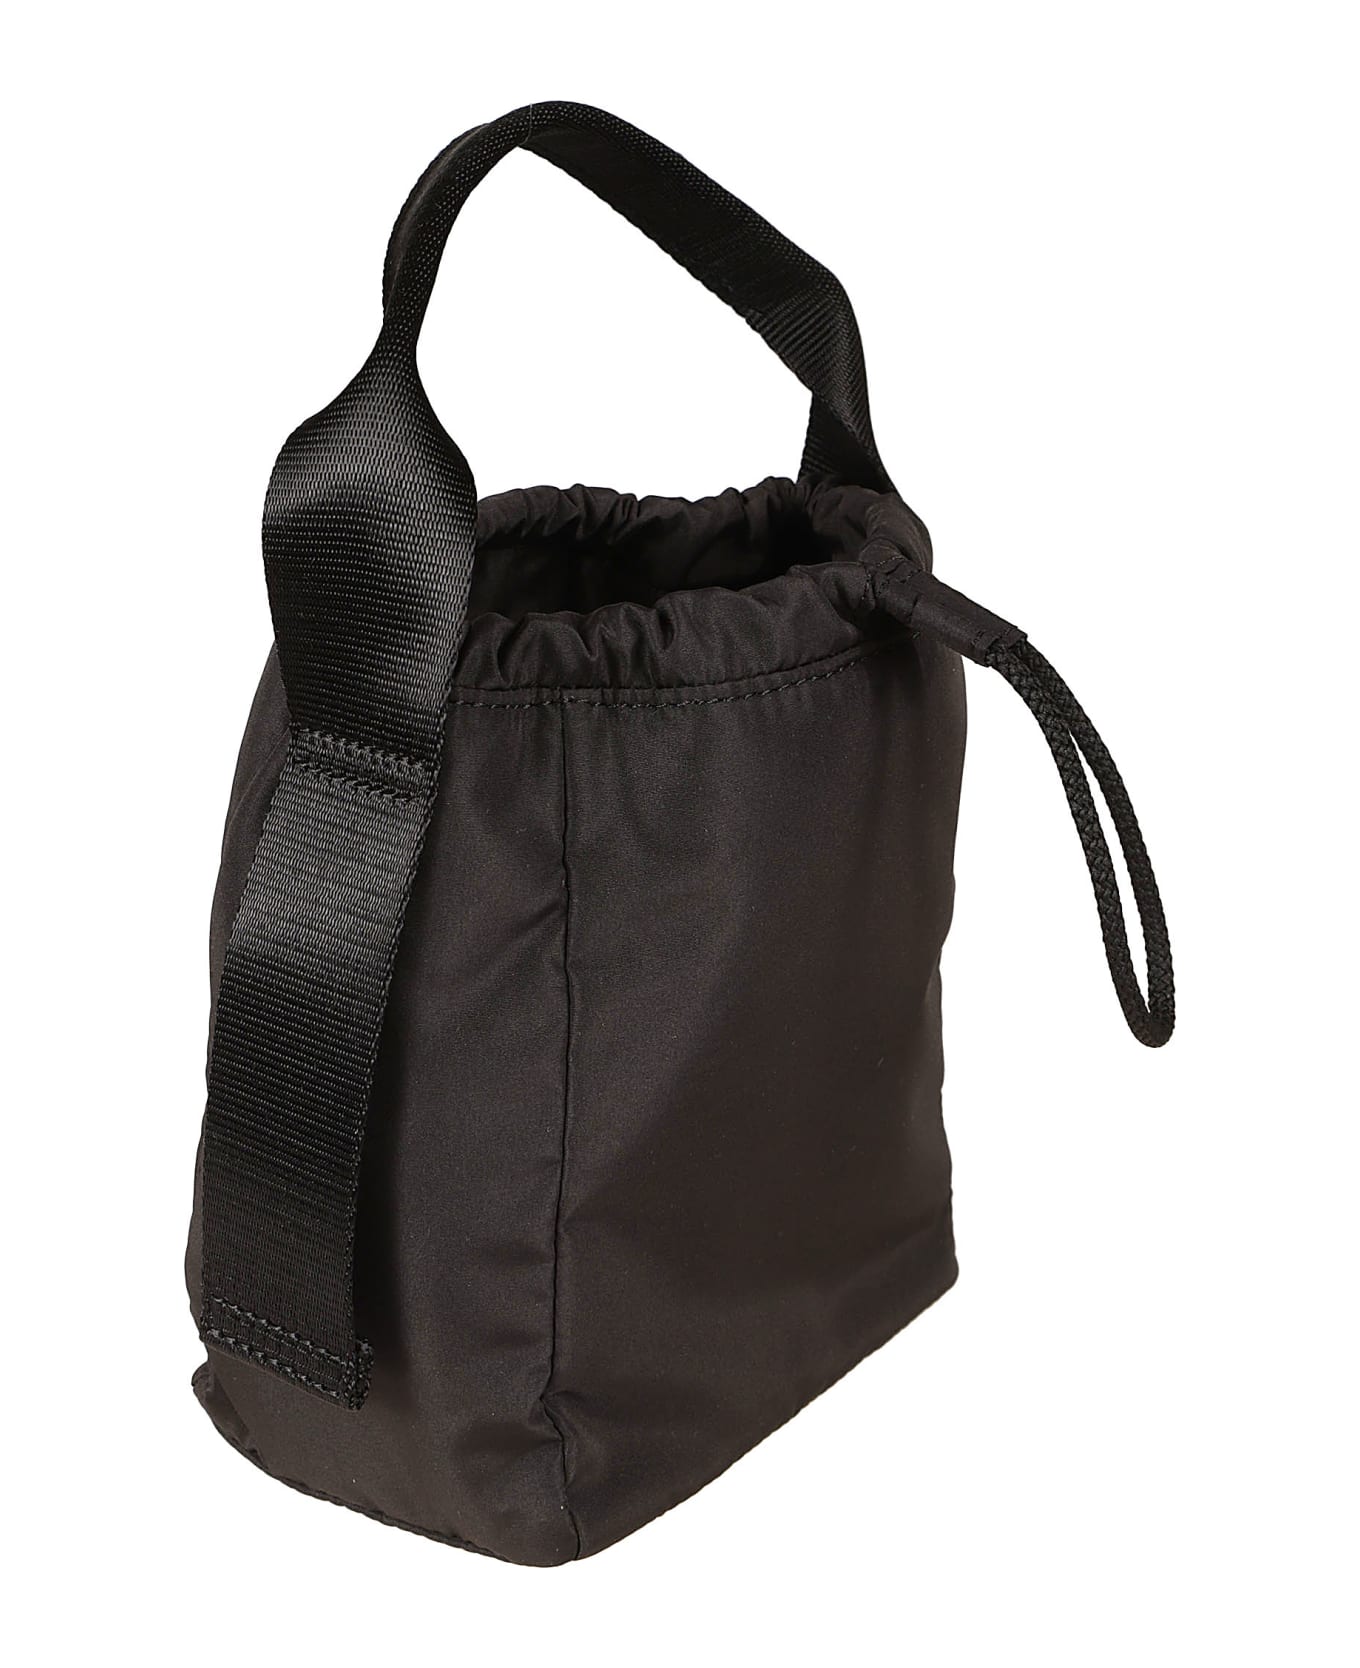 Ganni Drawstring Top Bucket Bag - Black